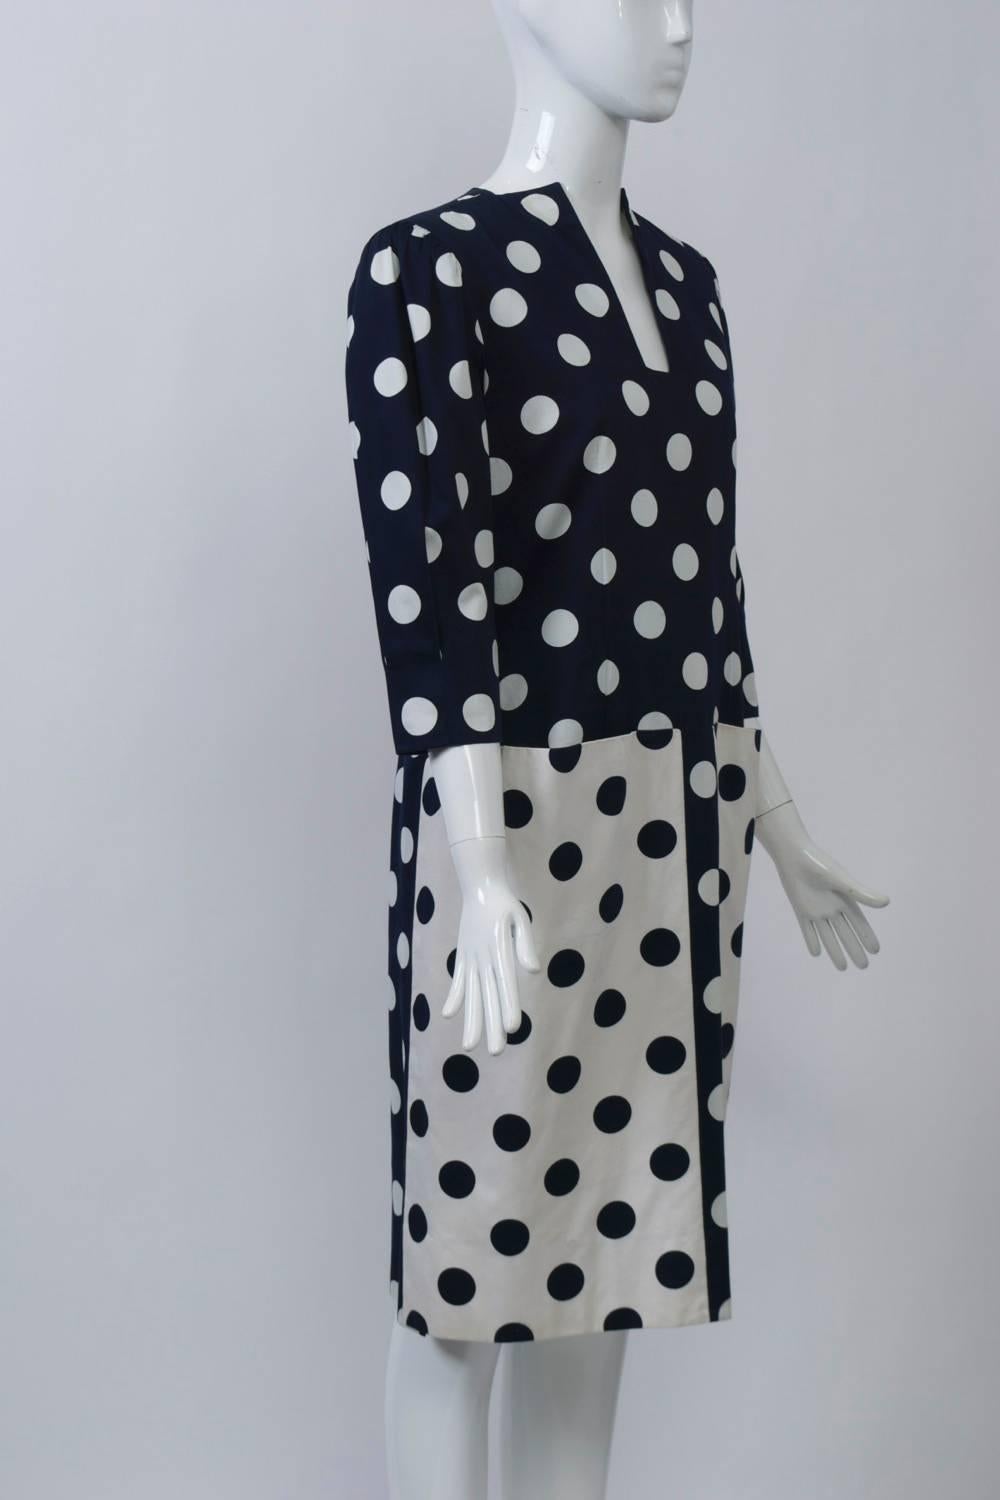 Robe des années 1980 Pauline Trigére en coton poli, imprimée de pois inversés marine/blanc et présentant le souci du détail propre à la créatrice. Le corps de la robe, de couleur marine à pois blancs, présente une encolure fendue inhabituelle et des